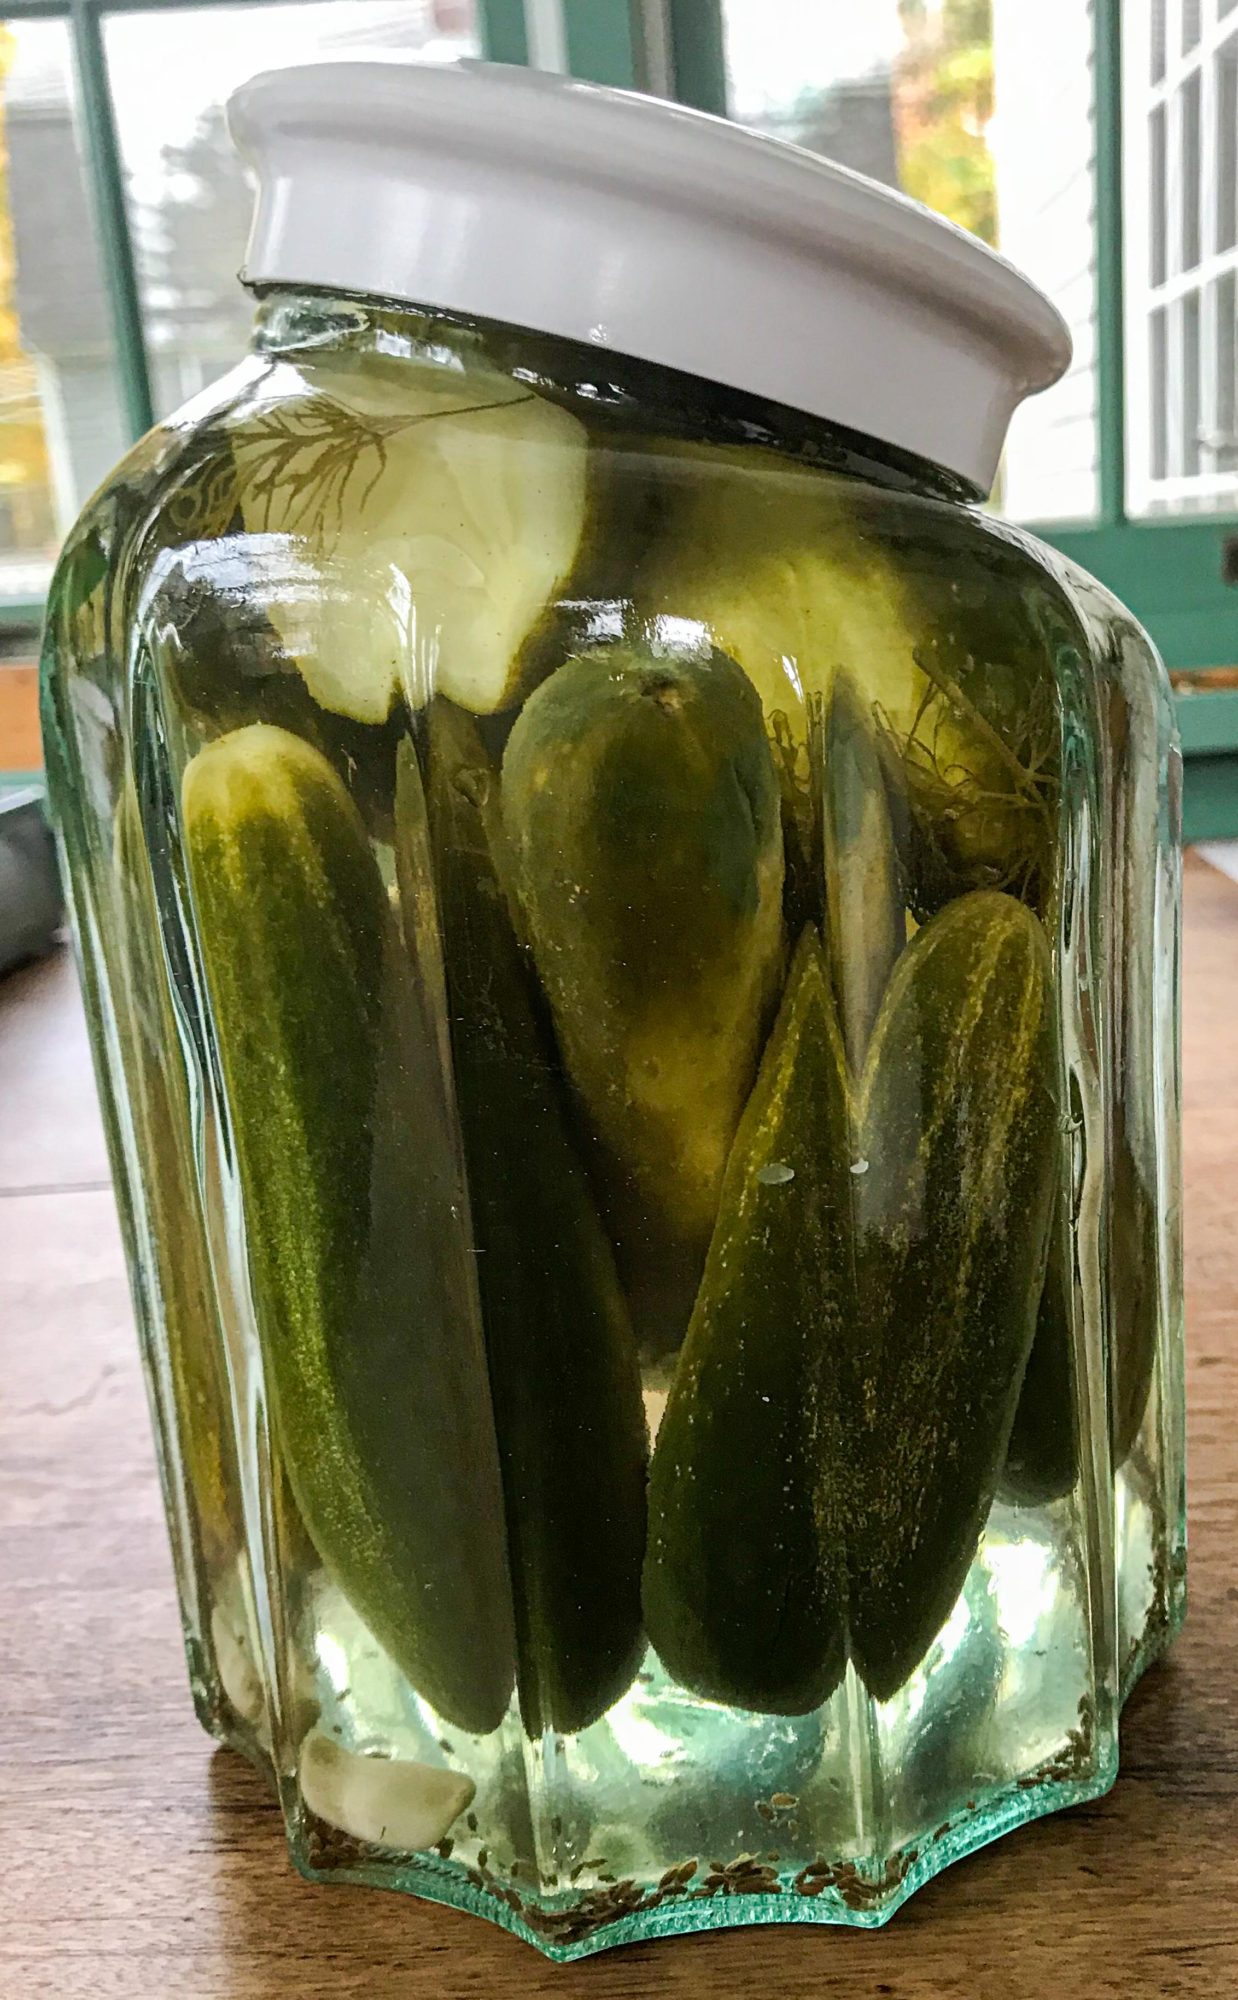 pickles in a jar of brine